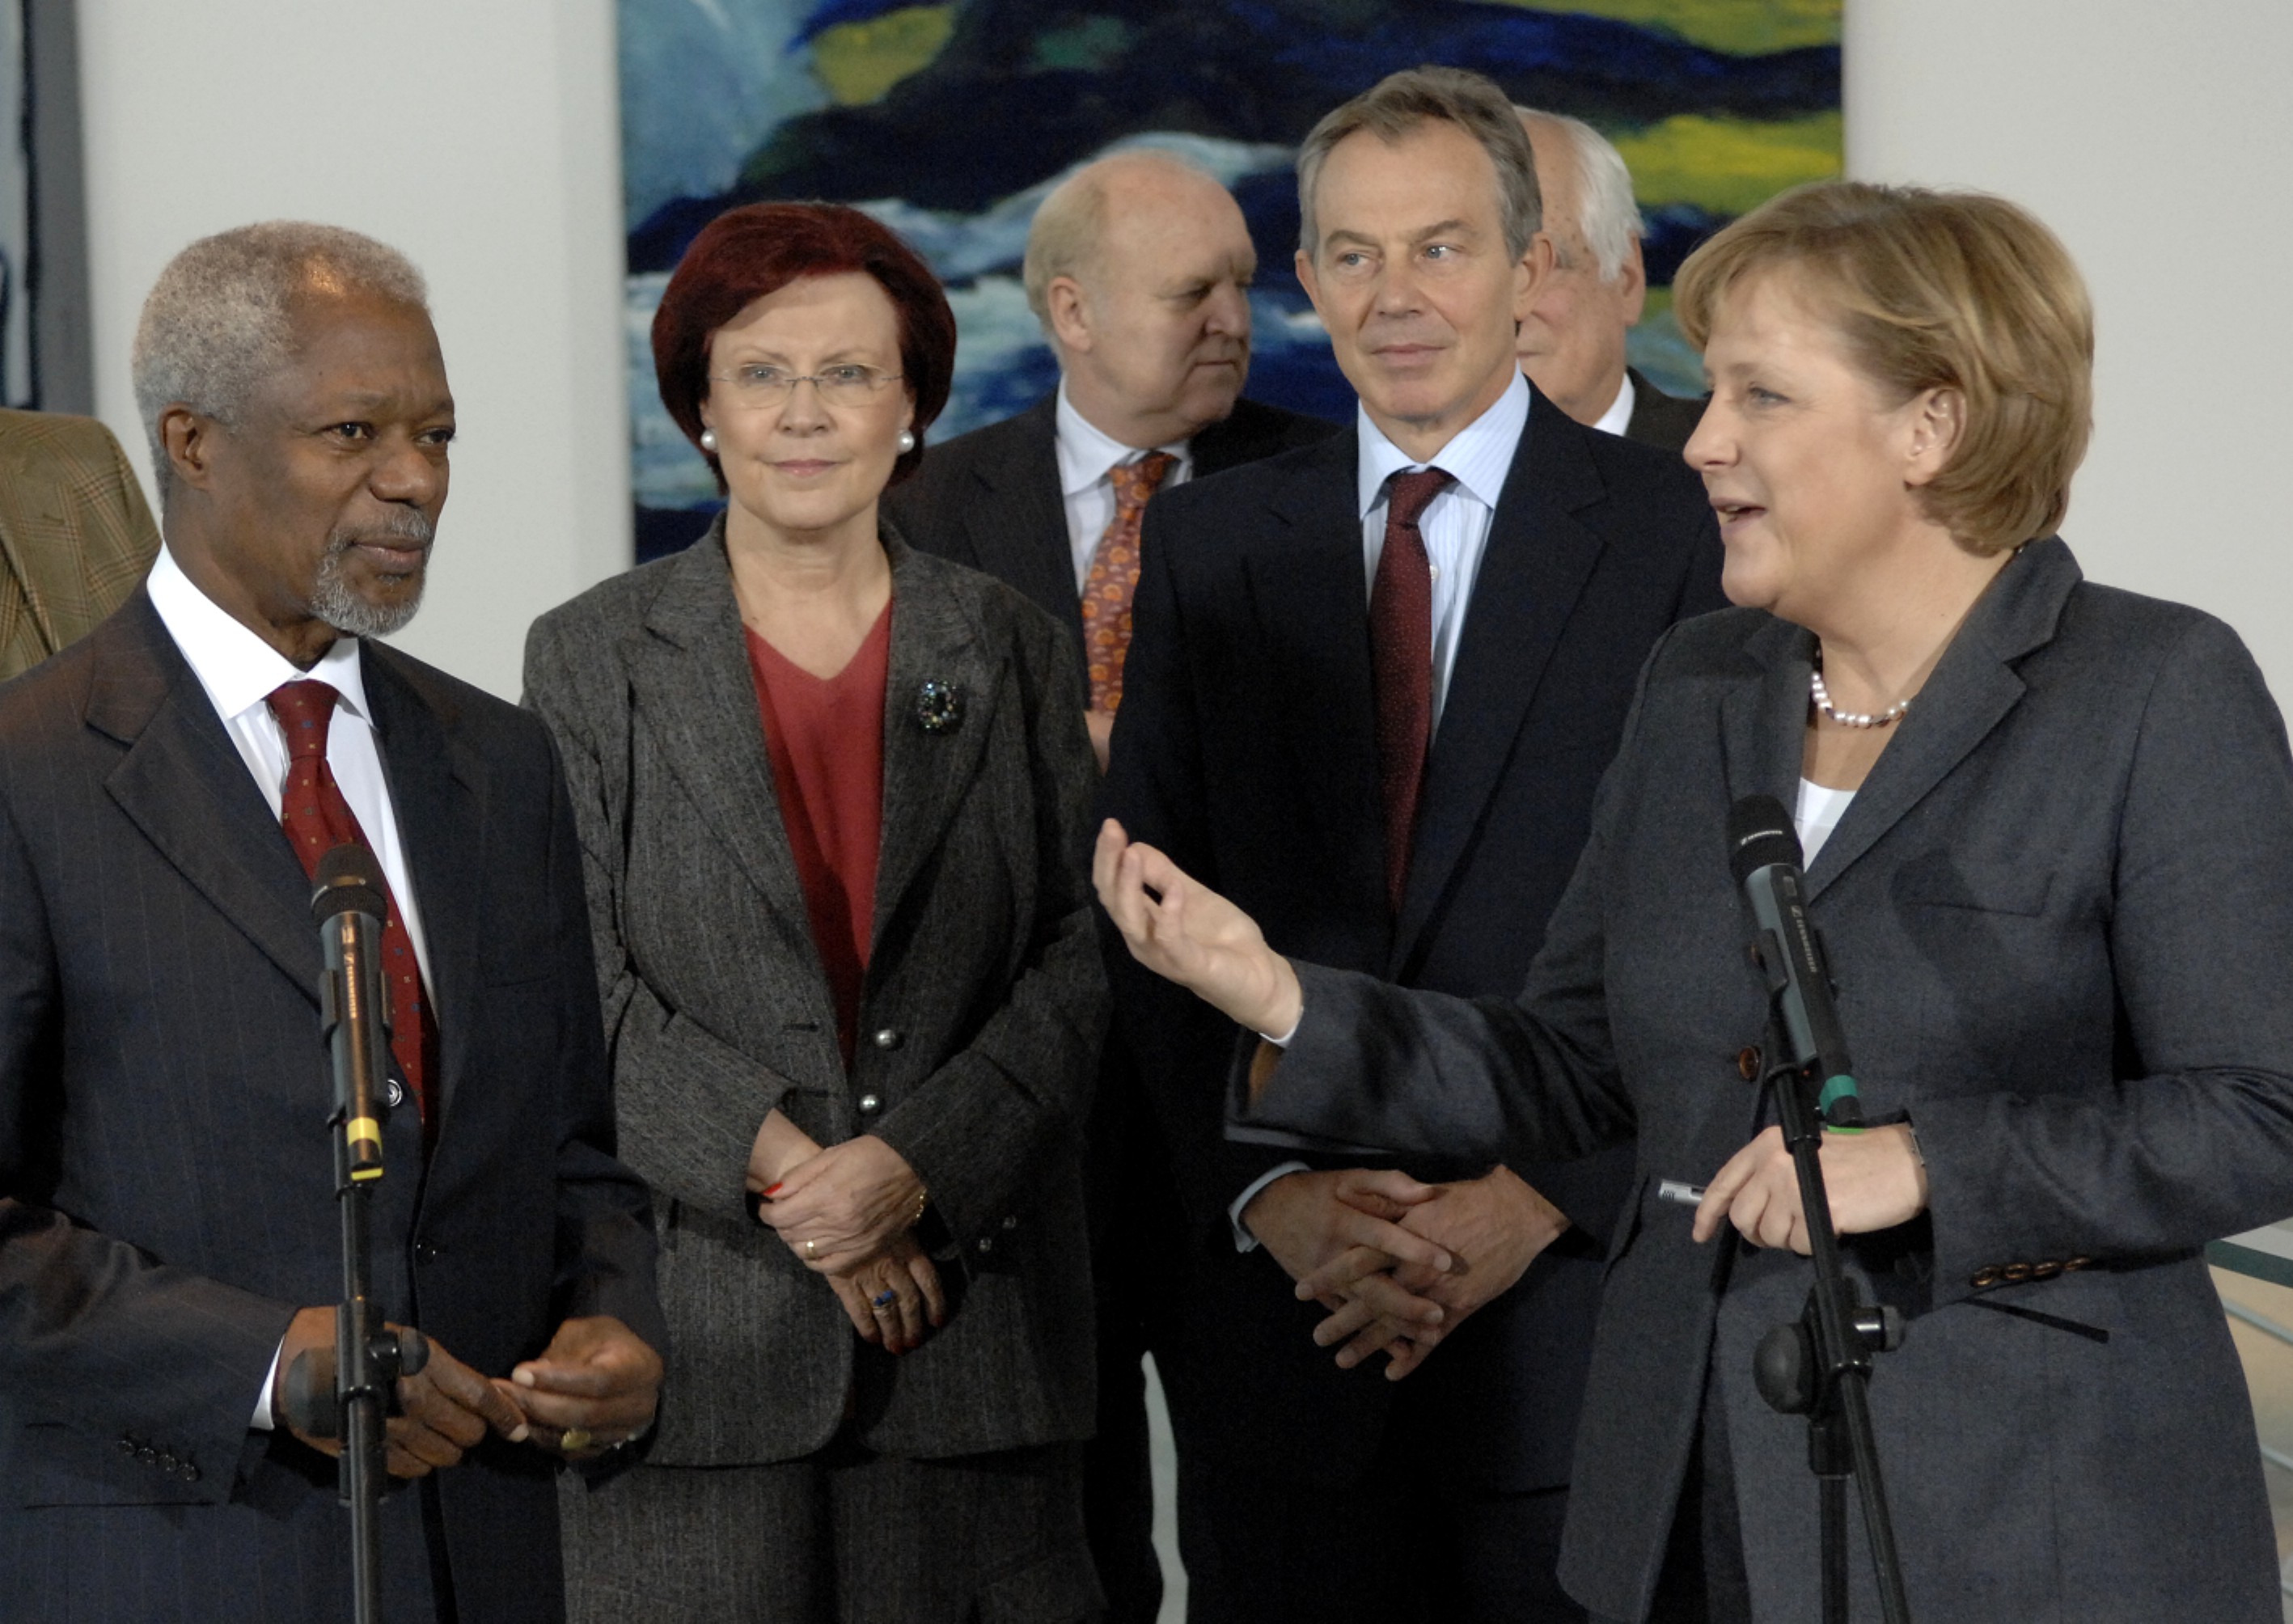 Bundeskanzlerin Angela Merkel, der britische Premierminister Tony Blair, Bundesentwicklungsministerin Heidemarie Wieczorek-Zeul und der ehemalige UN-Generalsekretär Kofi Annan bei einer Pressekonferenz des Africa Progress Panel im Jahr 2007